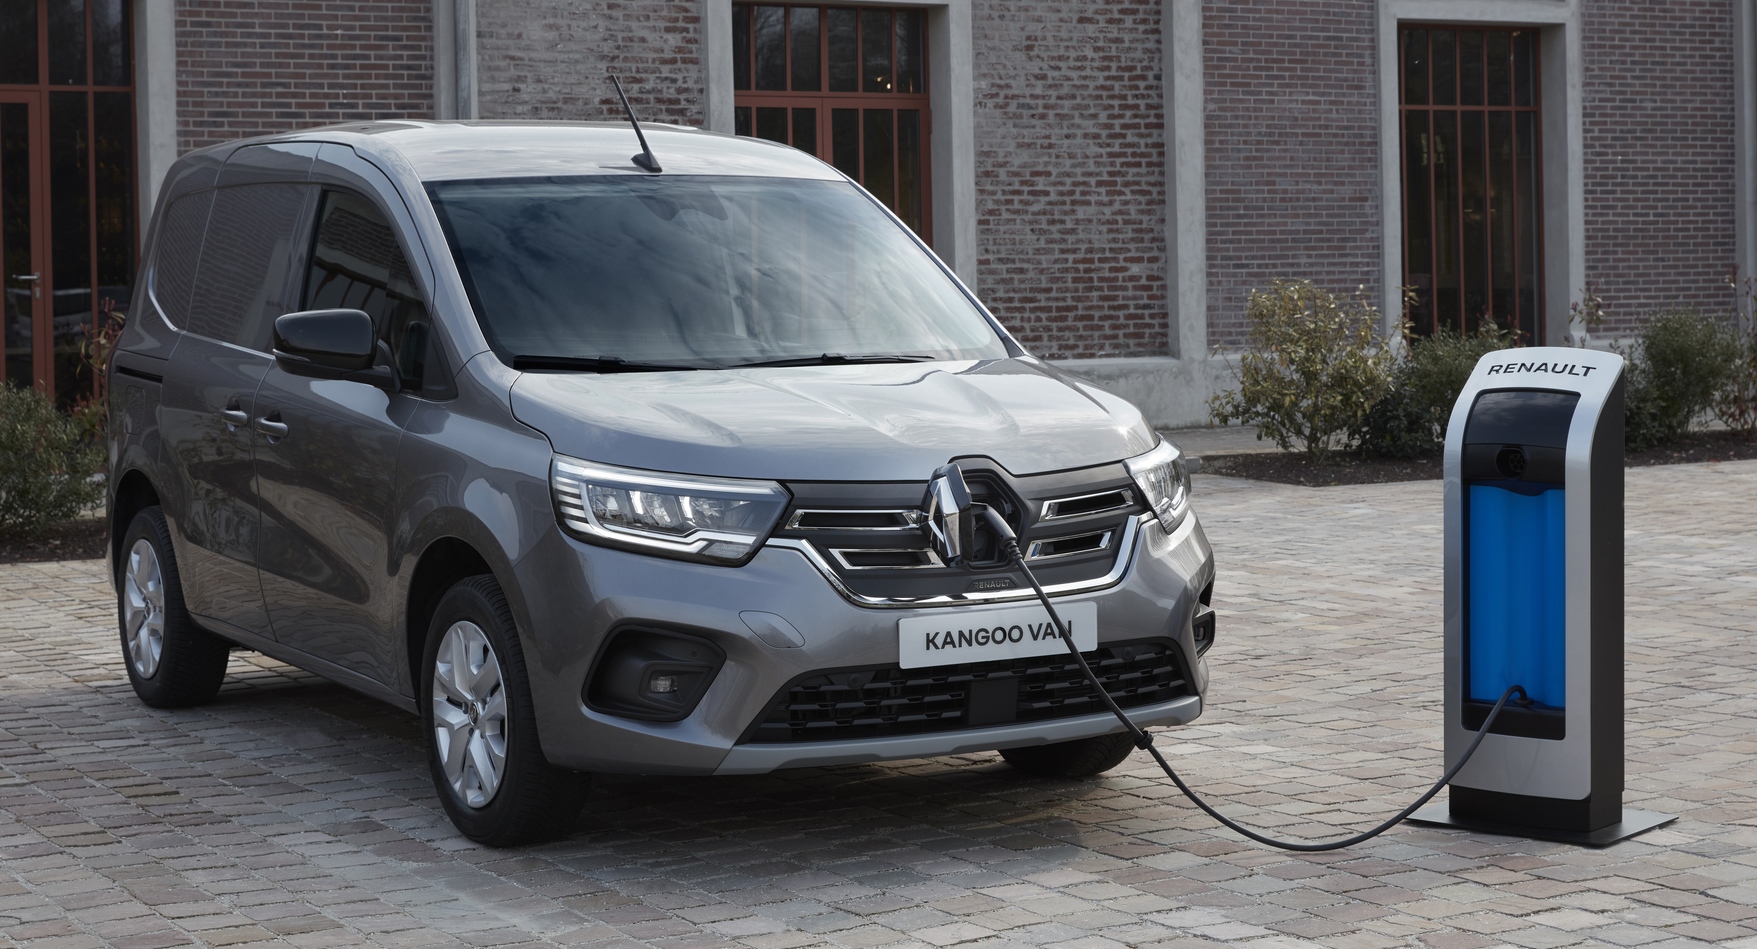 The new Renault Kangoo electric van arrives in spring 2022